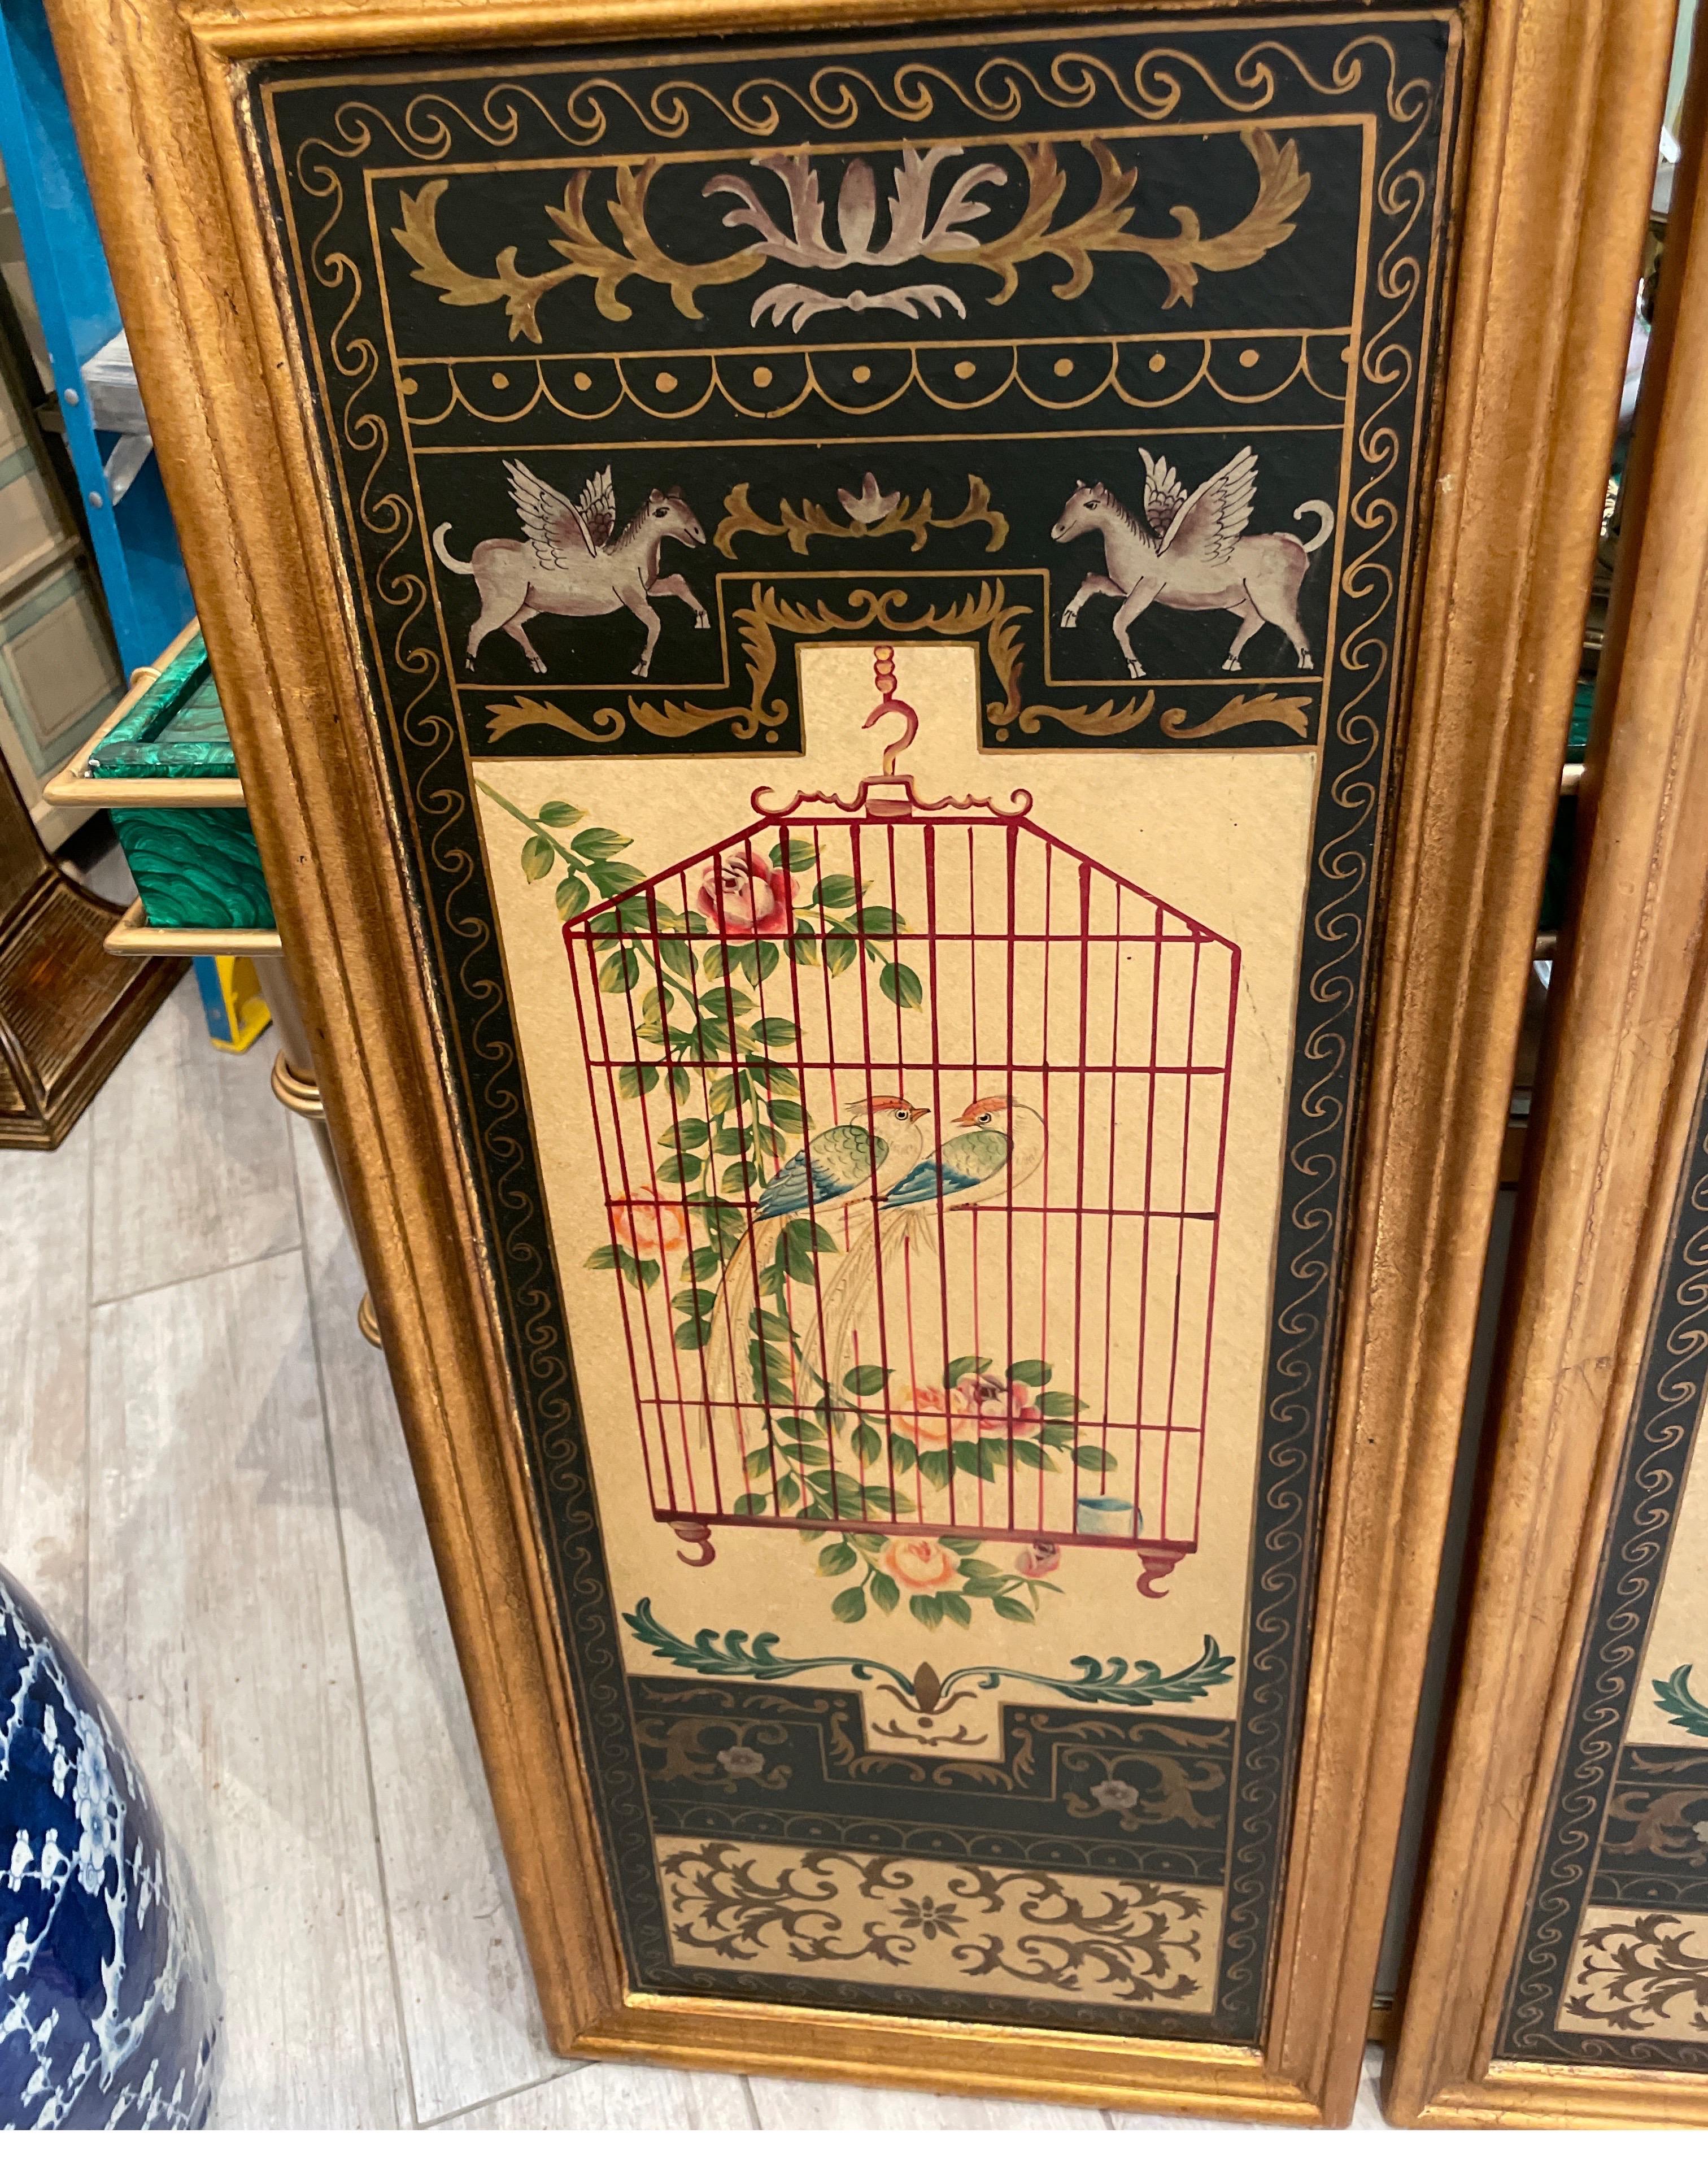 Zwei klassizistische Wandtafeln im Vintage-Stil, die gegensätzliche Vögel in ihren Käfigen, umgeben von Laub, darstellen. Sie sind auf Holzplatten mit vergoldetem Rahmen.